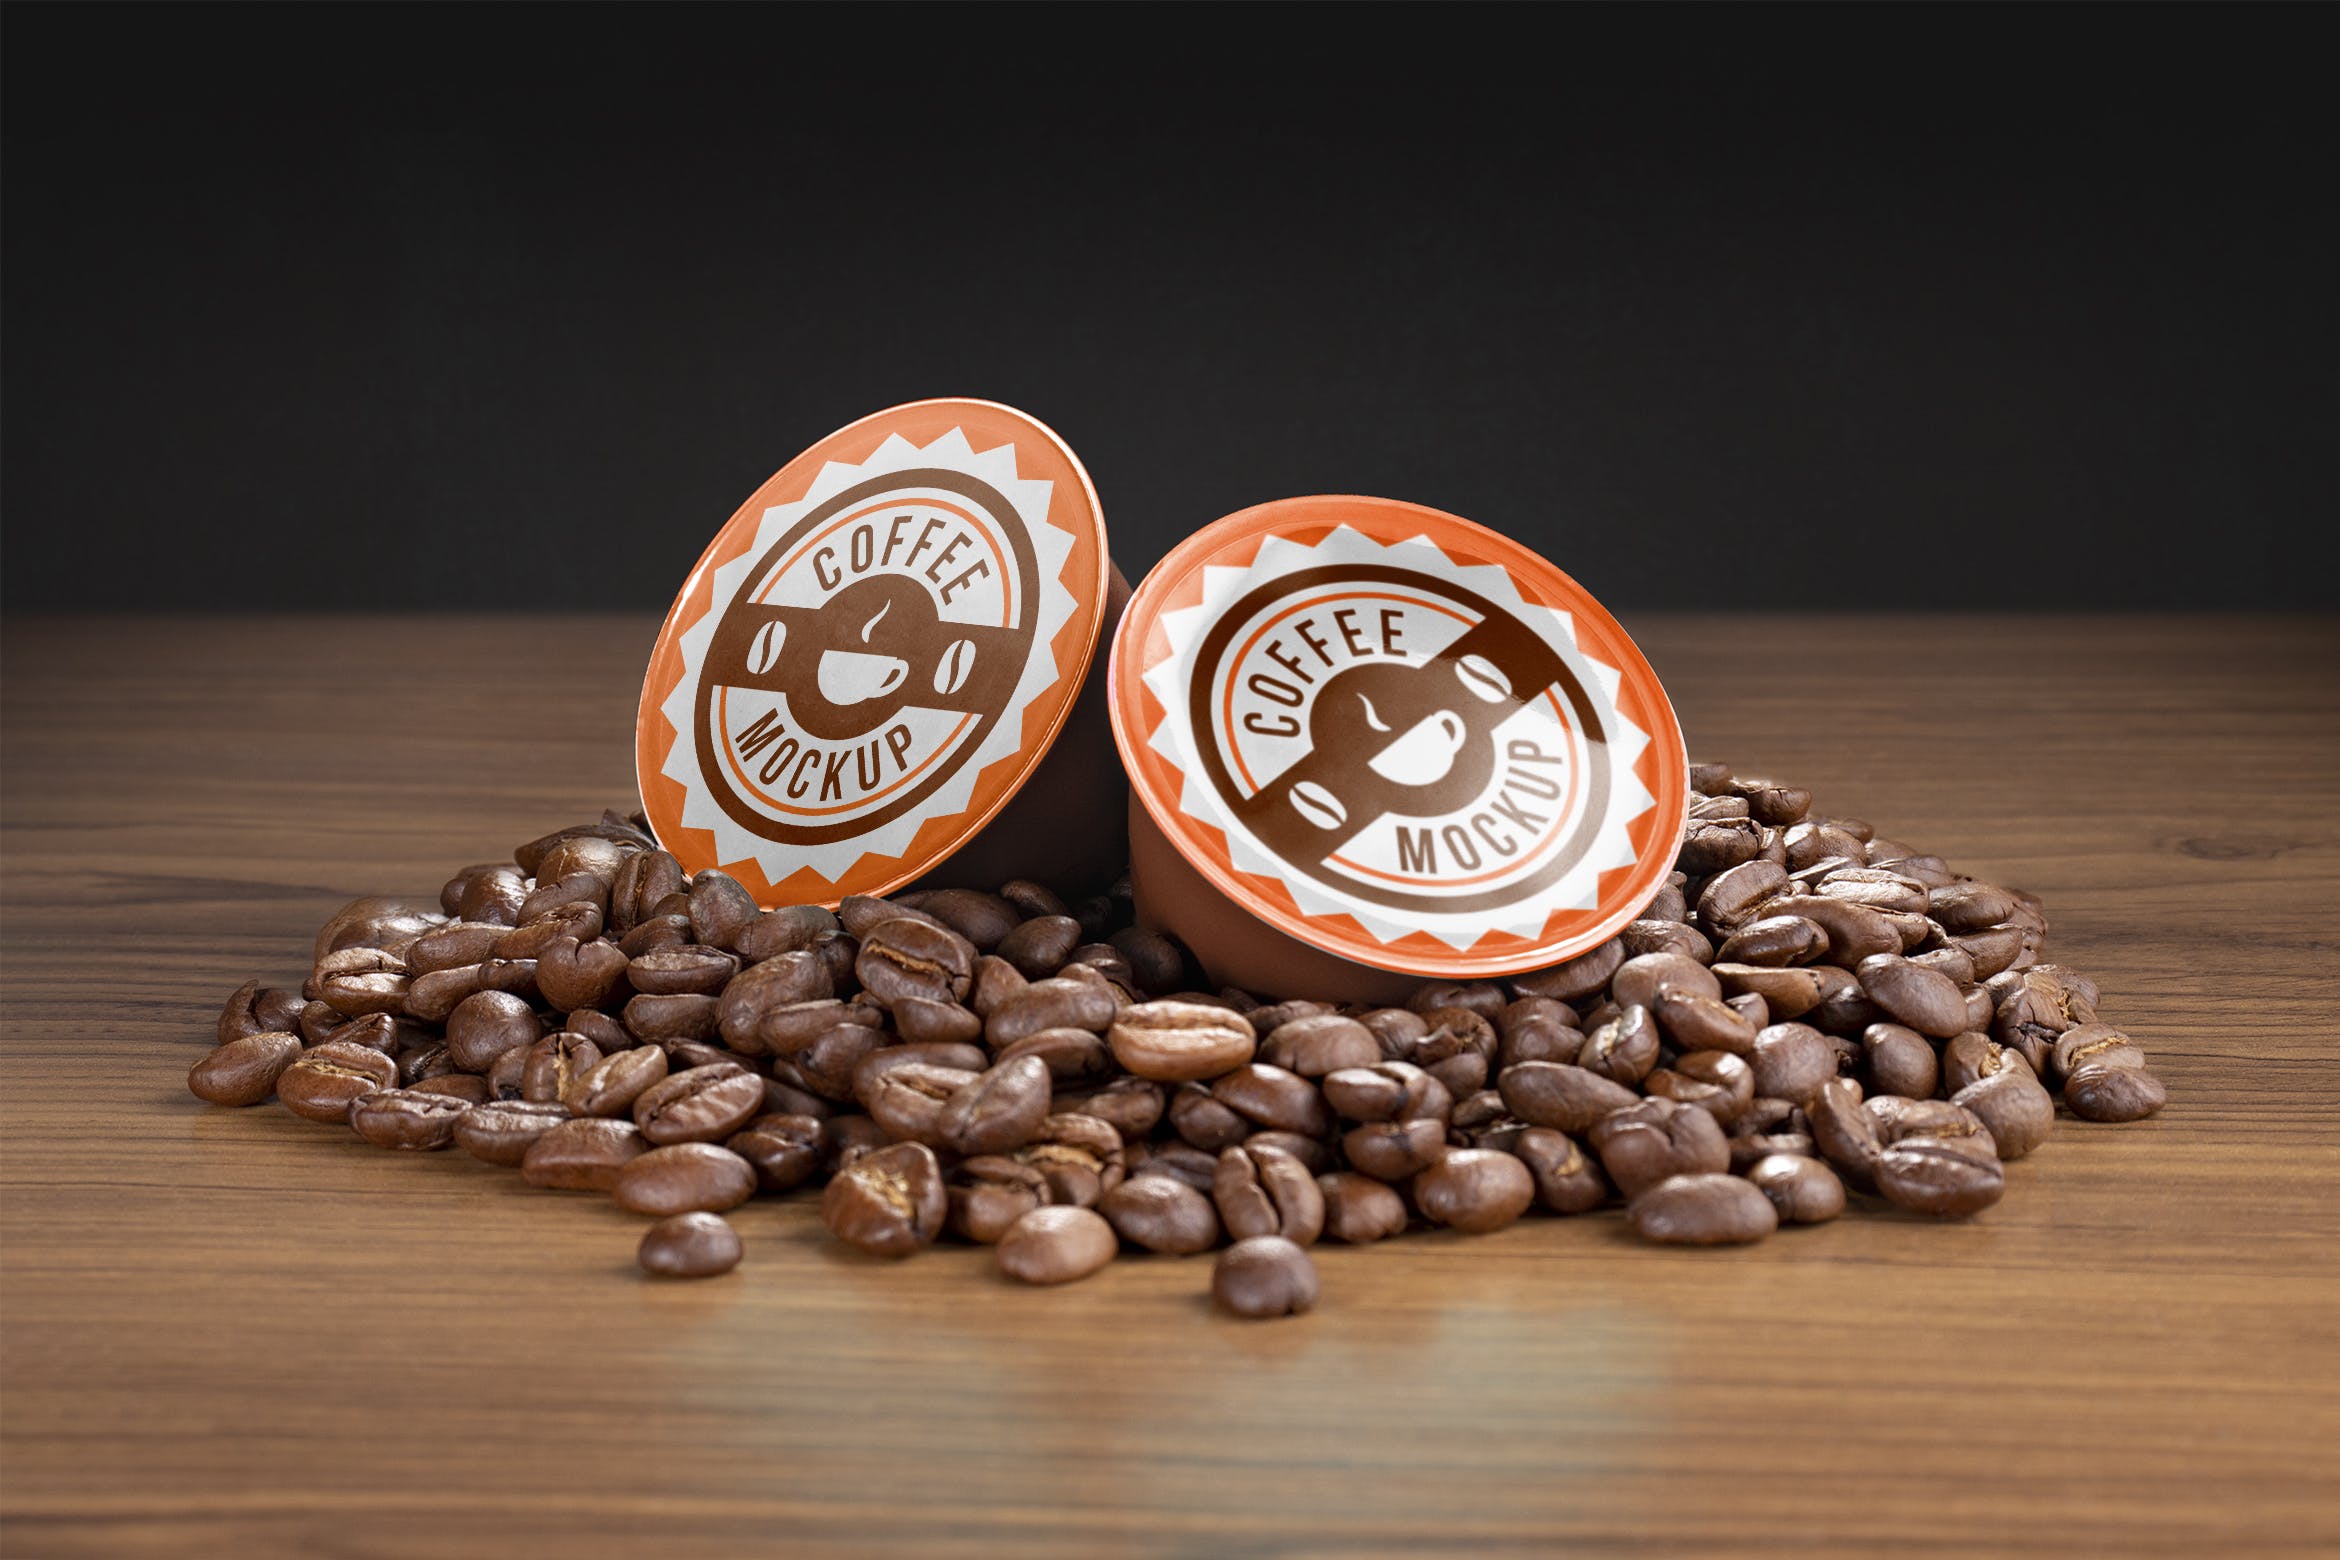 咖啡胶囊外包装设计16图库精选模板 Coffee capsule mockup插图